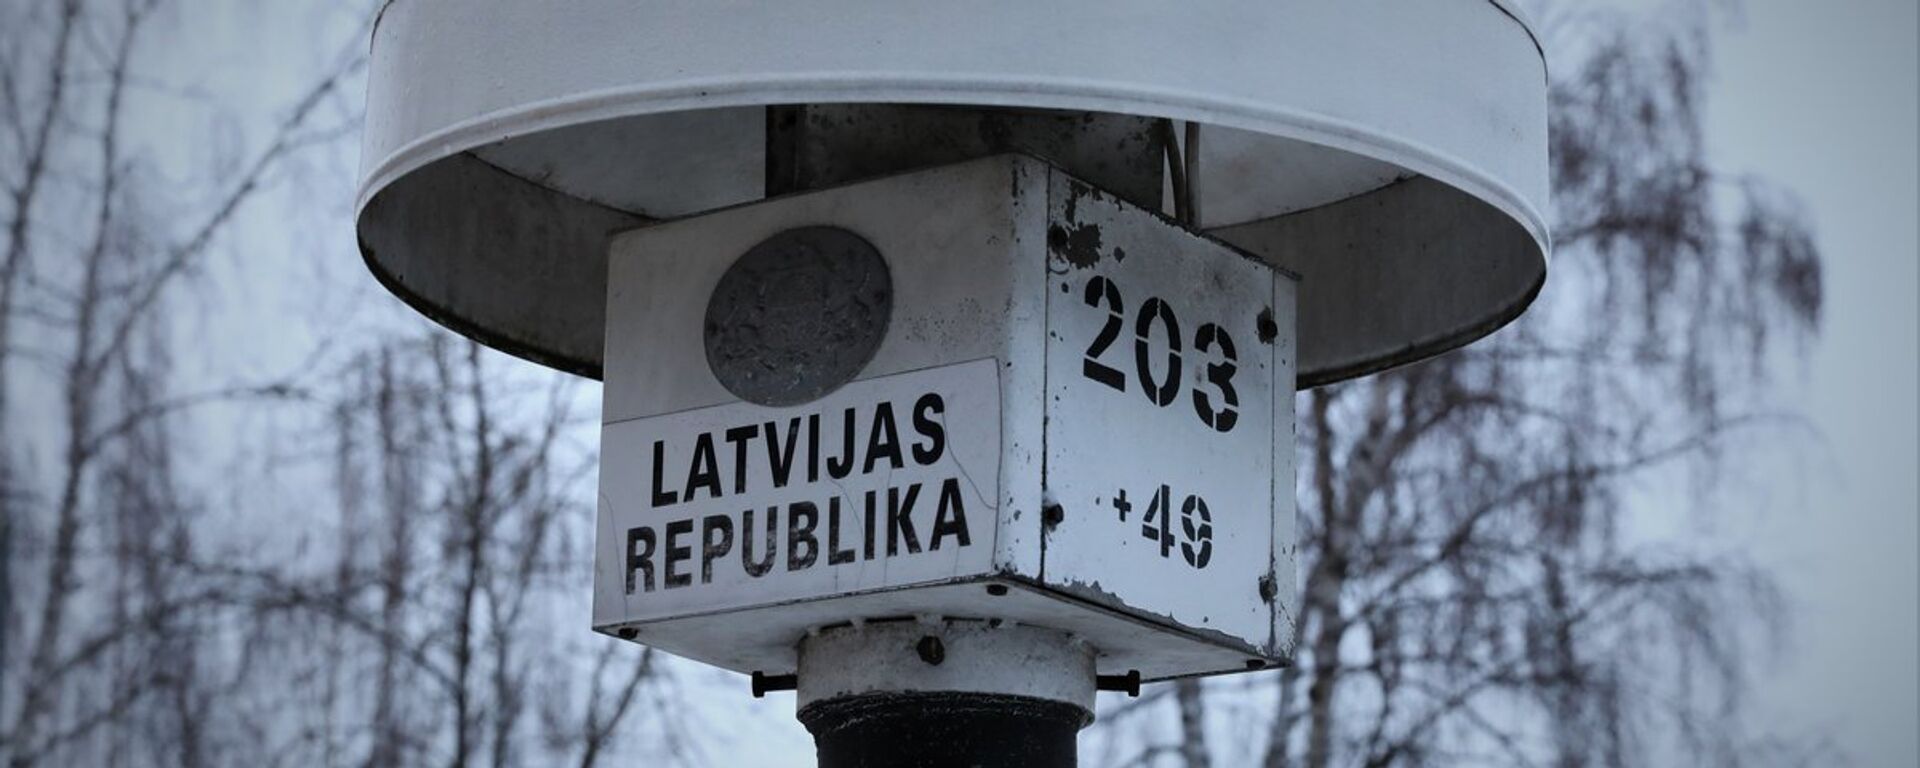 Пограничный столб на границе Латвия - Эстония - Sputnik Латвия, 1920, 16.03.2020